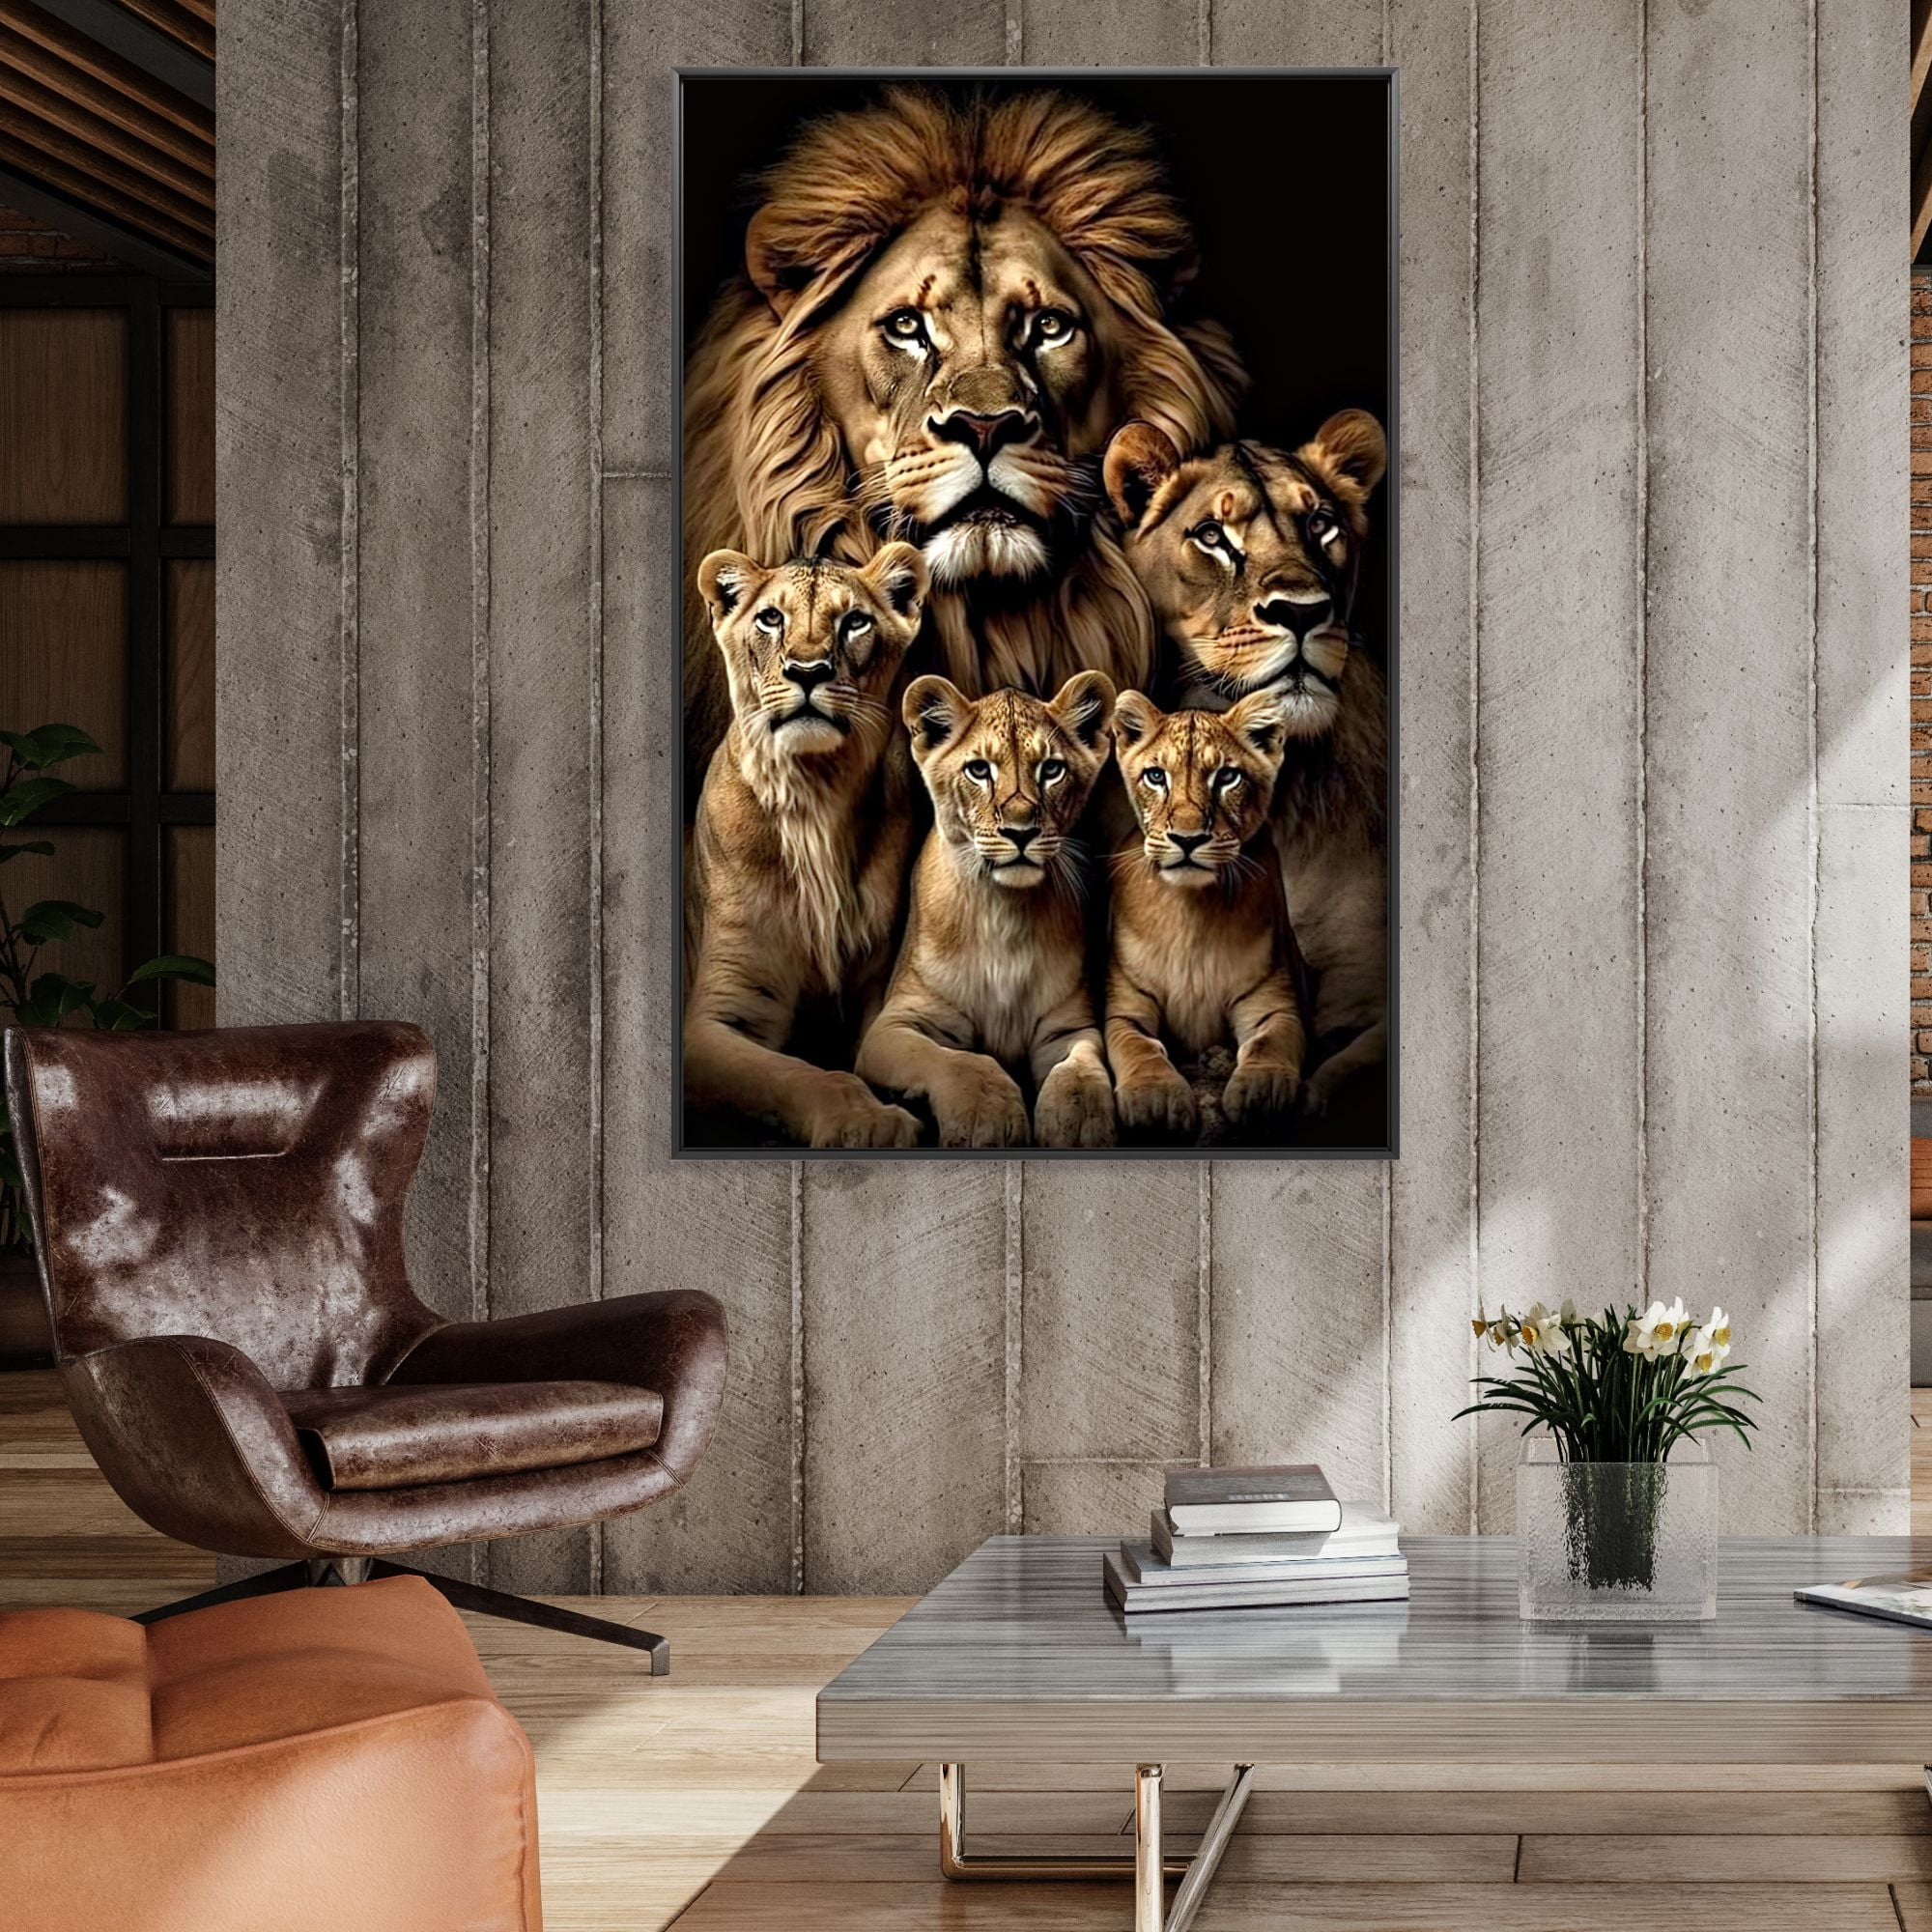 Quadro  decorativo família de leão 3 filhotes